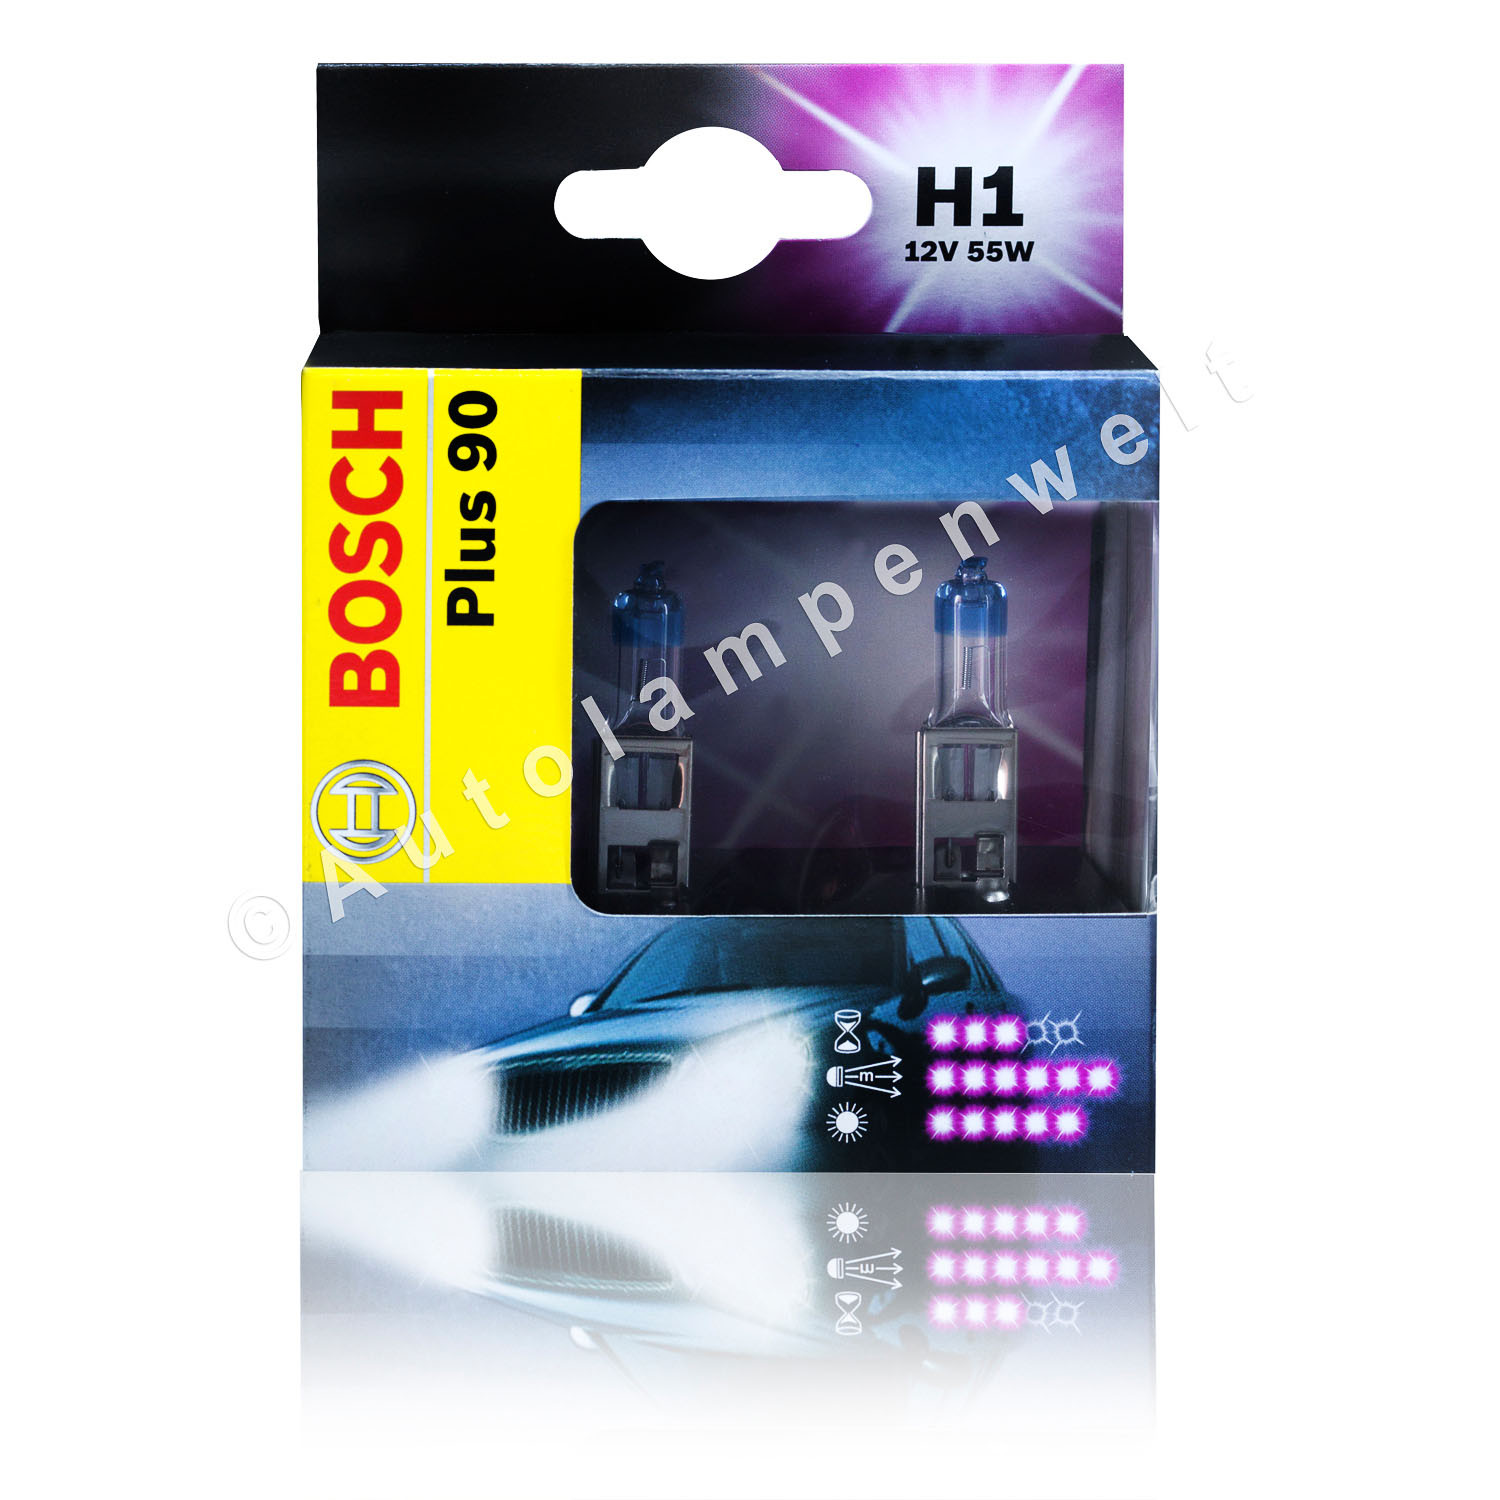 Bosch H1 Plus 90% mehr Licht Power Fahrzeuglampe 2er Set